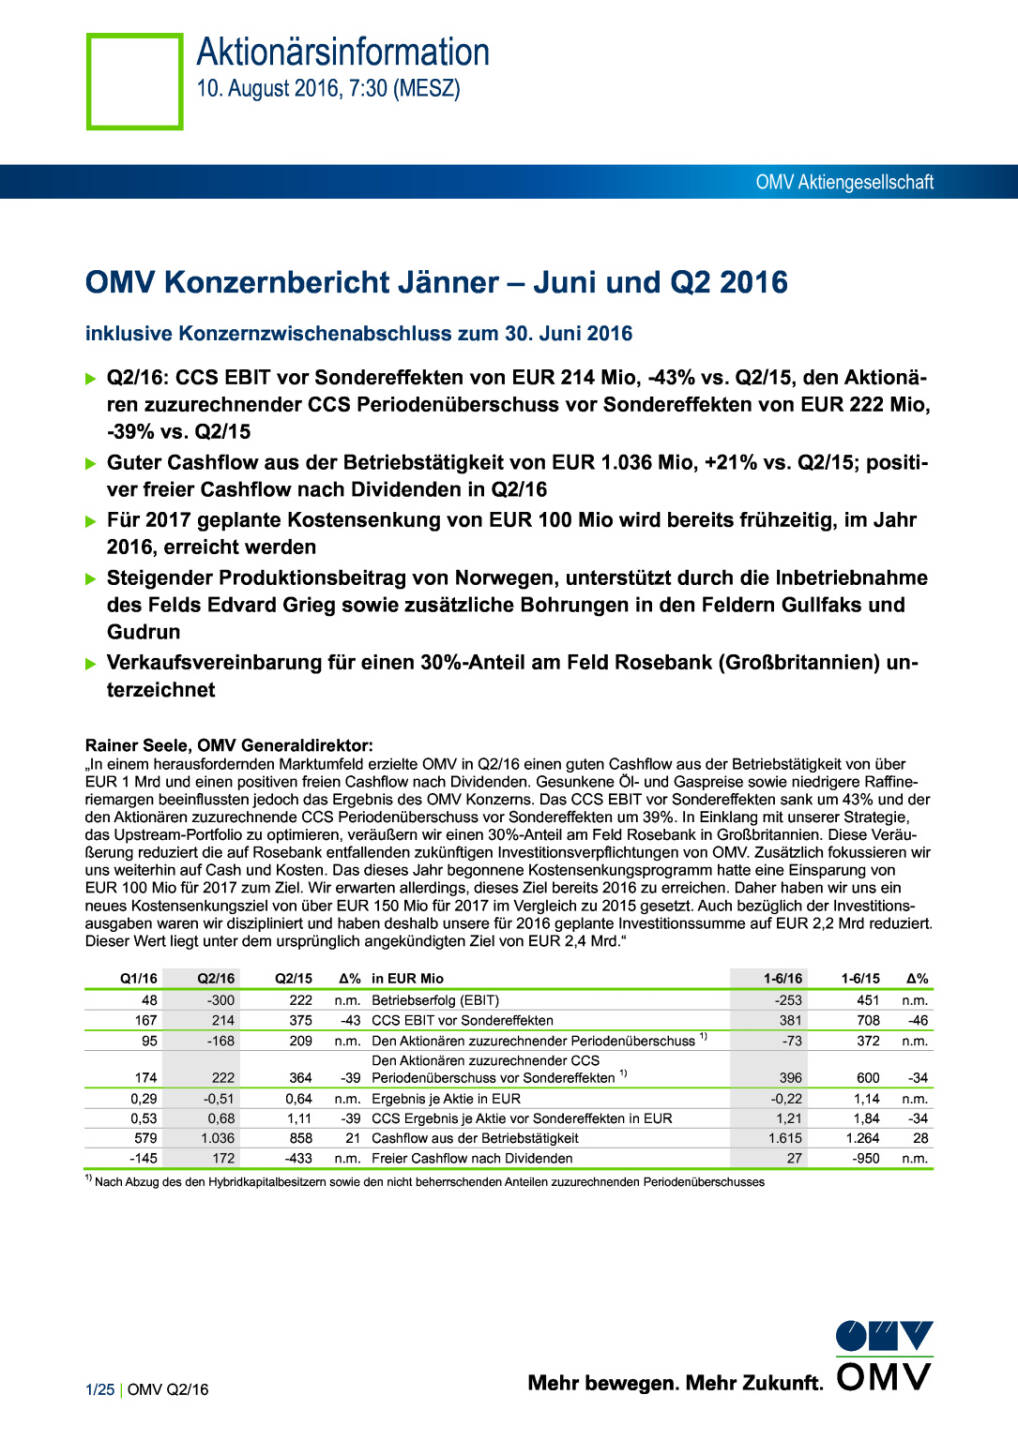 OMV Konzernbericht Jänner – Juni und Q2 2016 , Seite 1/25, komplettes Dokument unter http://boerse-social.com/static/uploads/file_1596_omv_konzernbericht_janner_juni_und_q2_2016.pdf